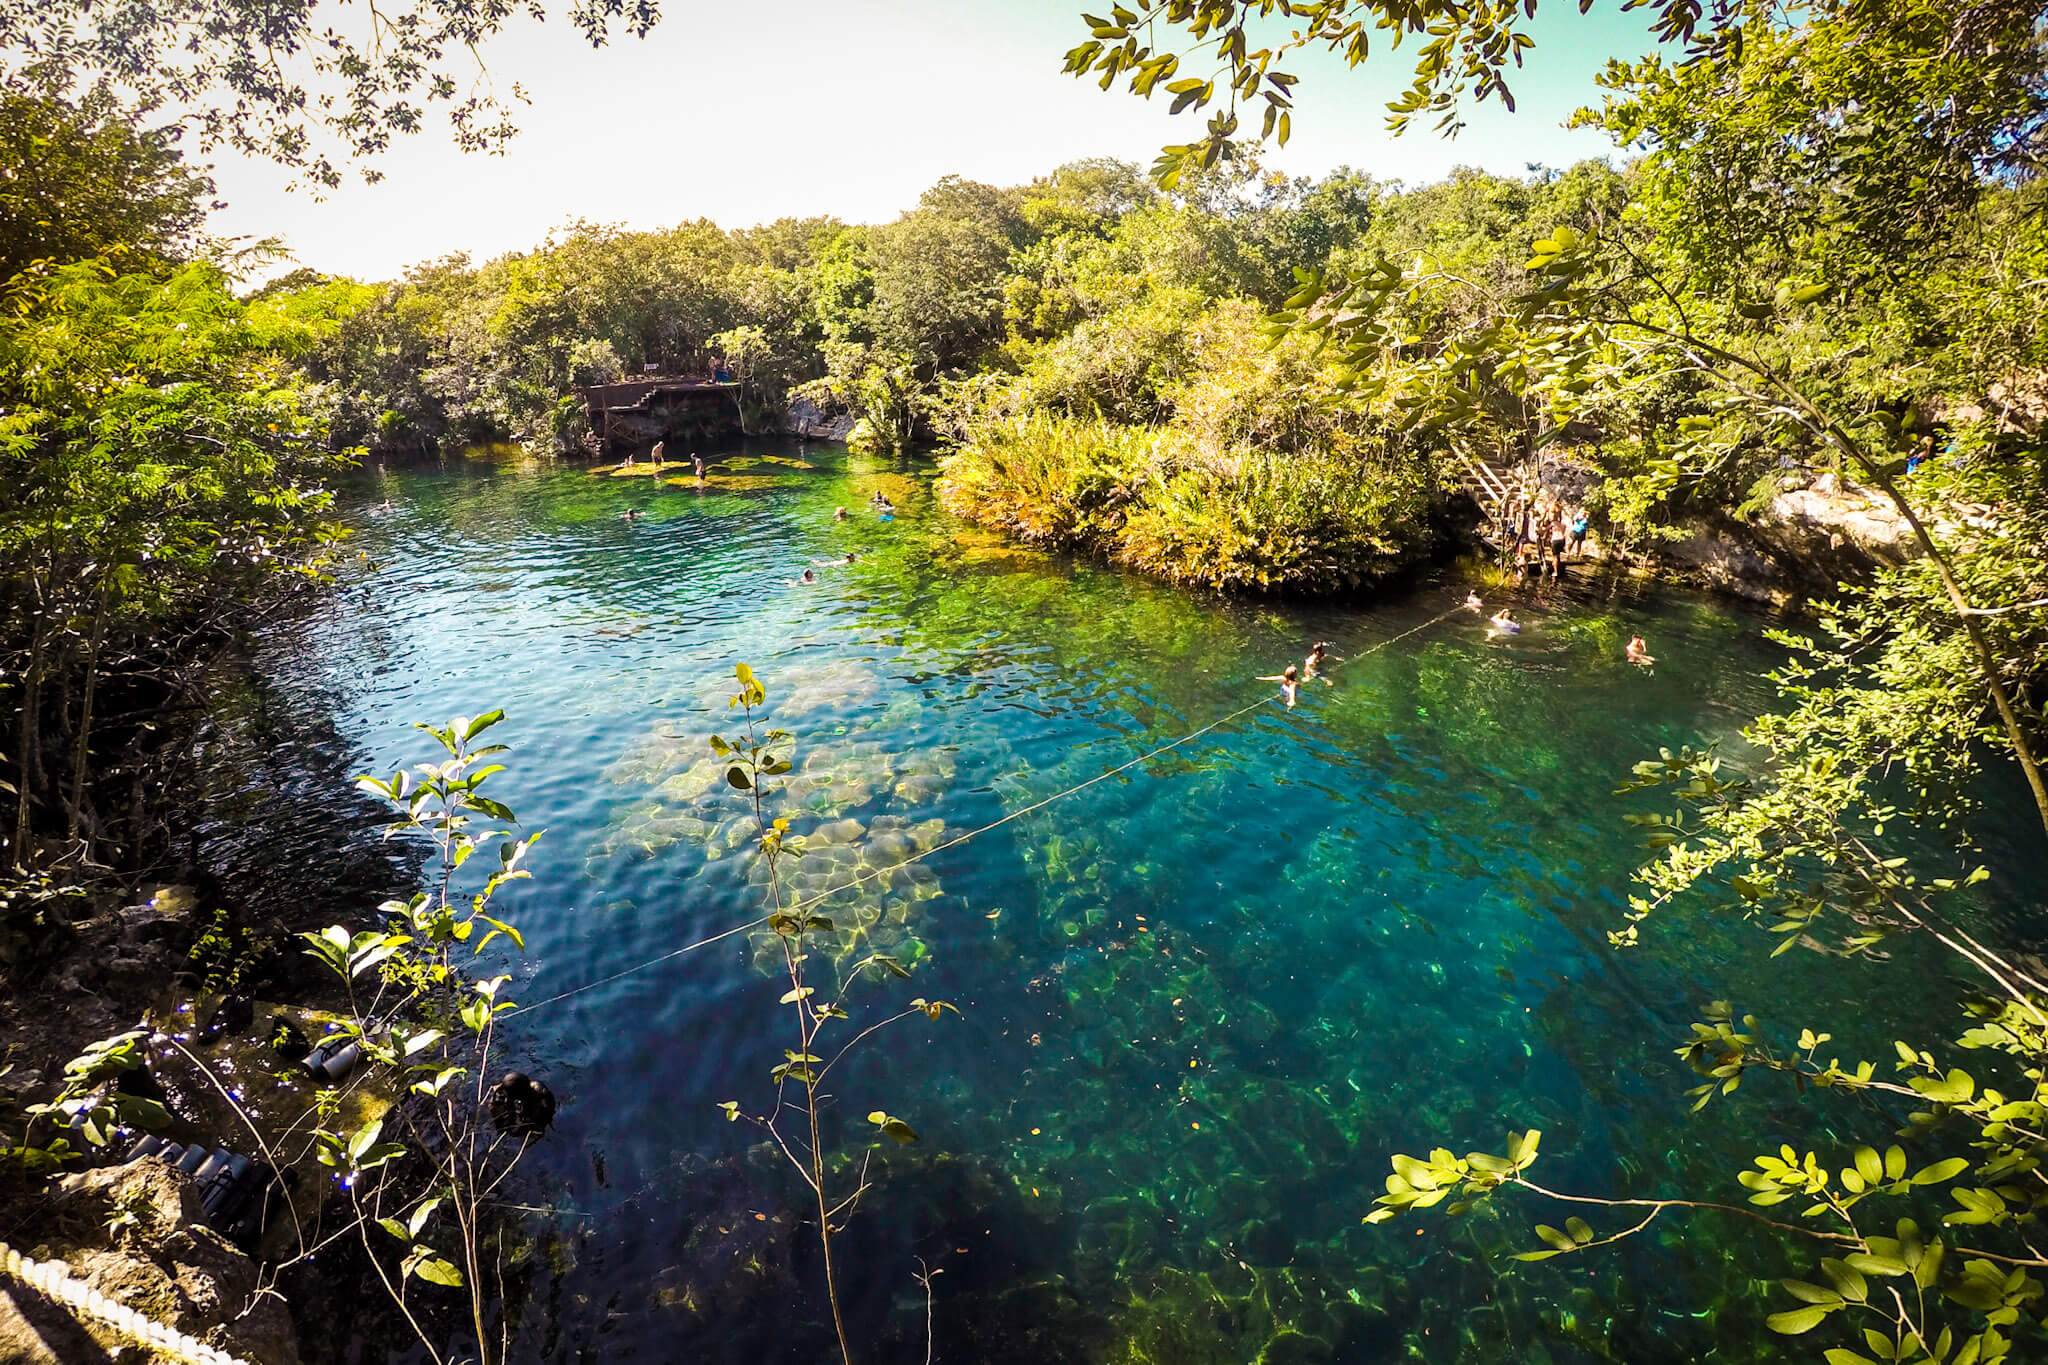 The Jardín del Eden cenote (also known as Cenote Ponderosa) near Puerto Aventuras, Mexico